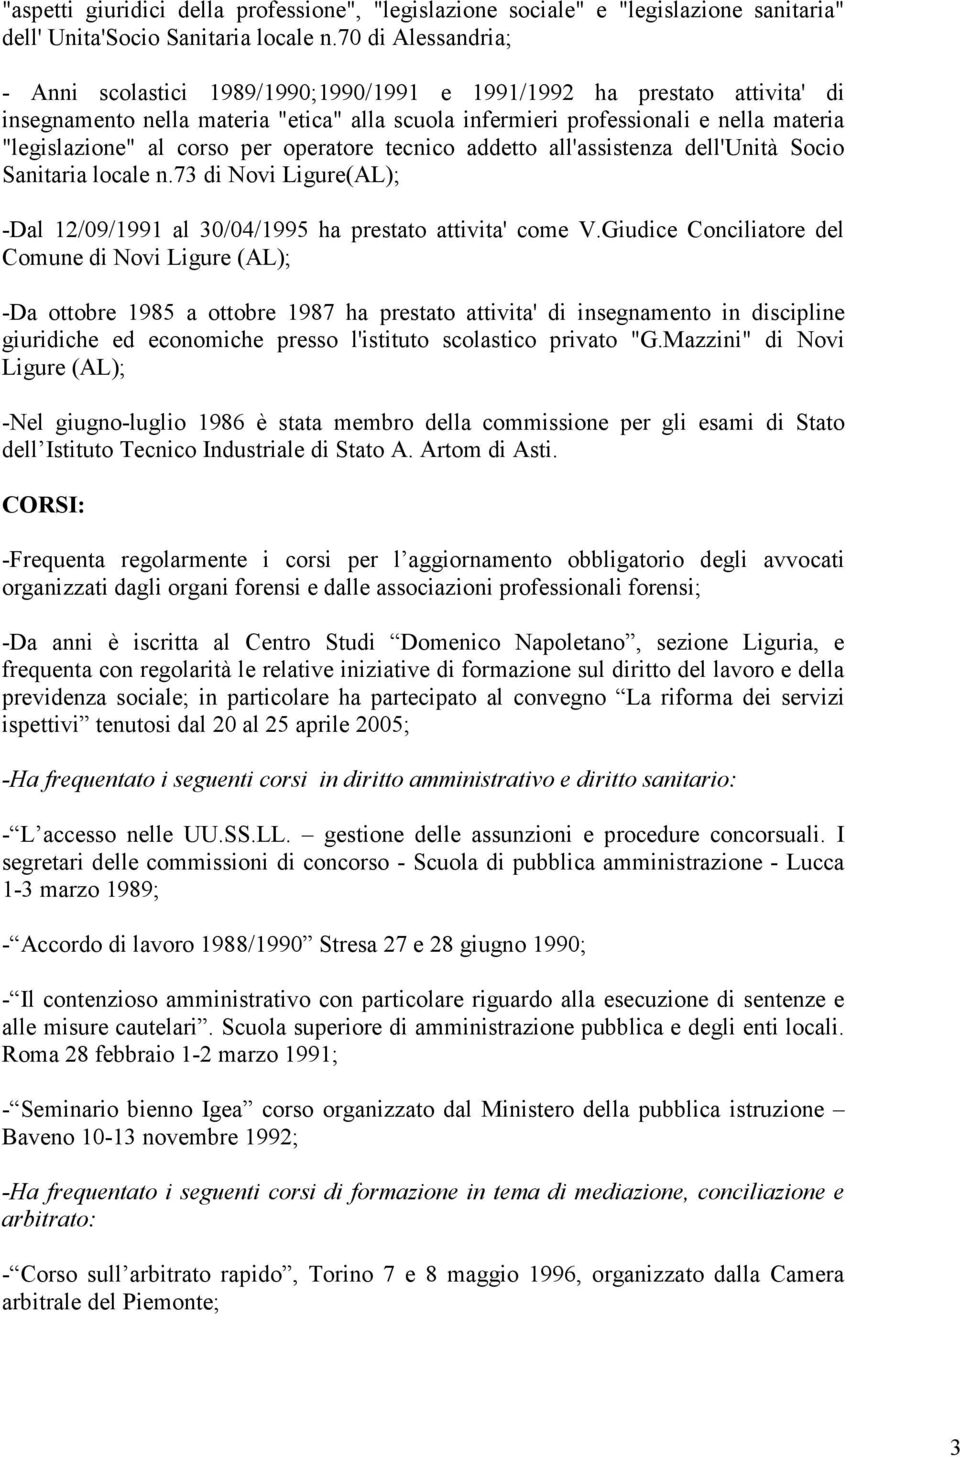 corso per operatore tecnico addetto all'assistenza dell'unità Socio Sanitaria locale n.73 di Novi Ligure(AL); -Dal 12/09/1991 al 30/04/1995 ha prestato attivita' come V.